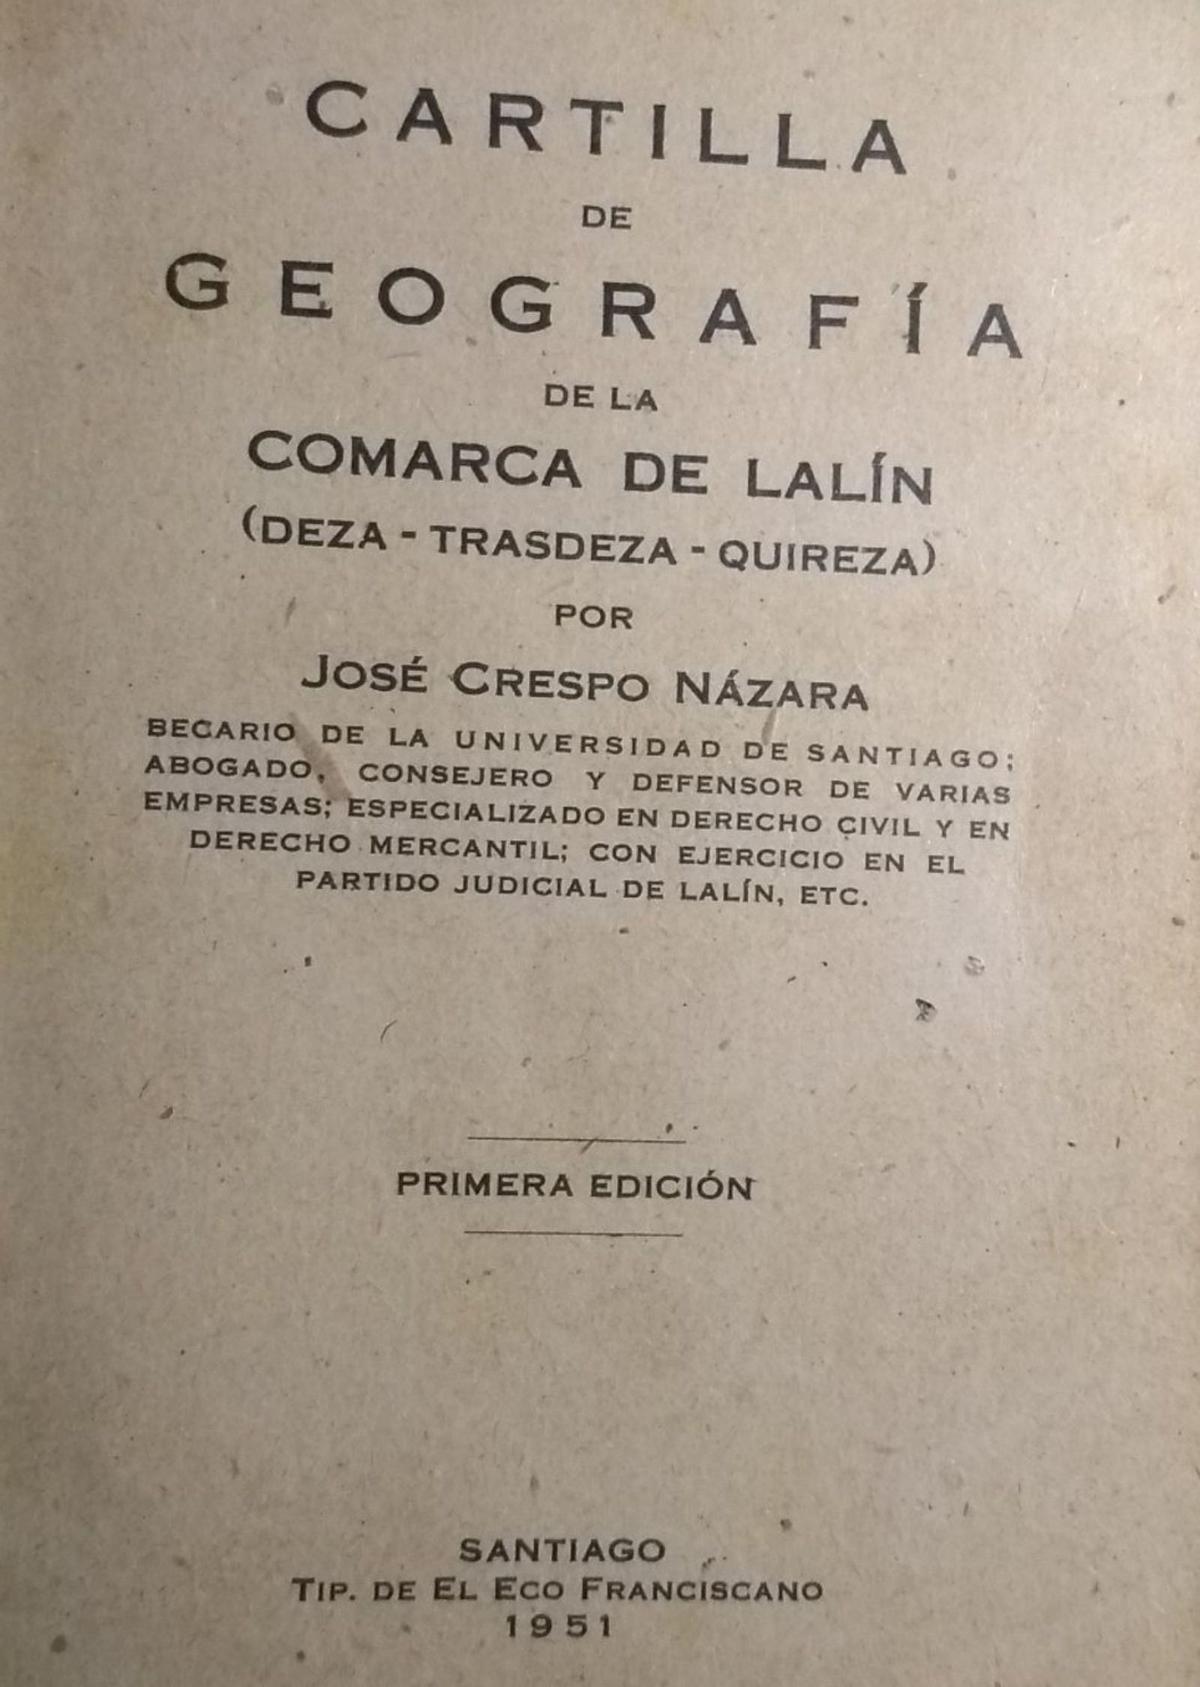 Cartilla de geografía de la comarca de Lalín (Deza, Trasdeza y Quireza)